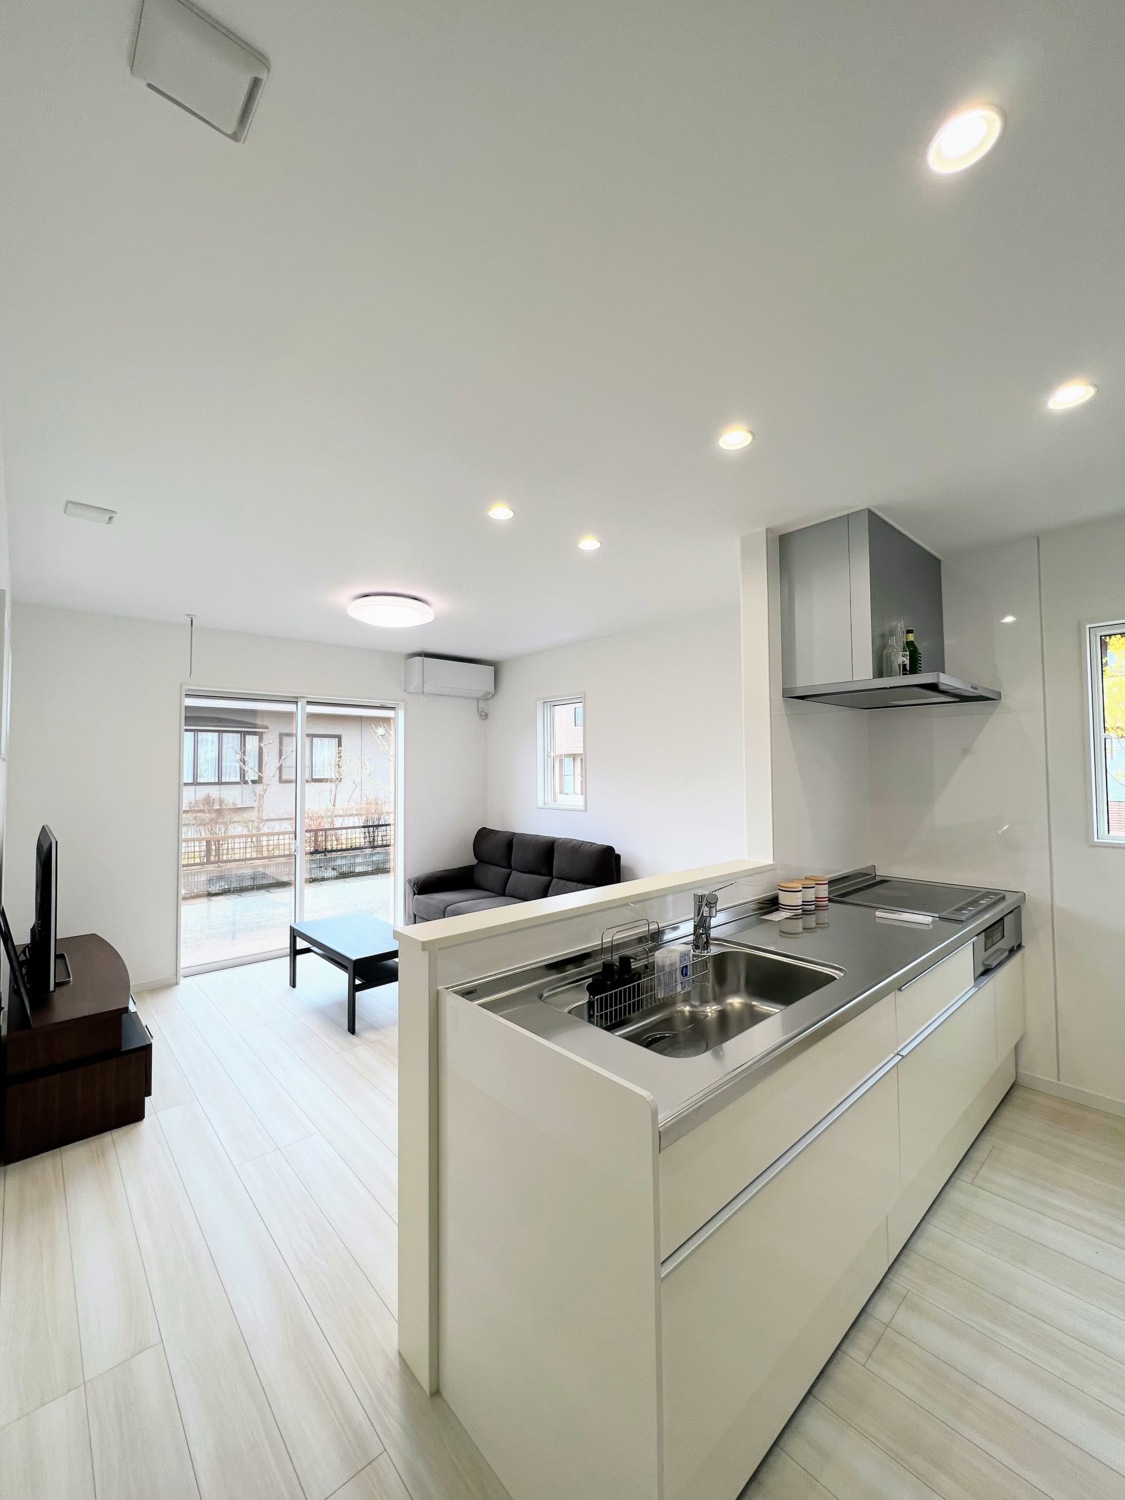 部屋全体がすっきりとして見える白を基調とした、空間の効率的な活用と充実した収納があるシンプルモダンスタイルの家